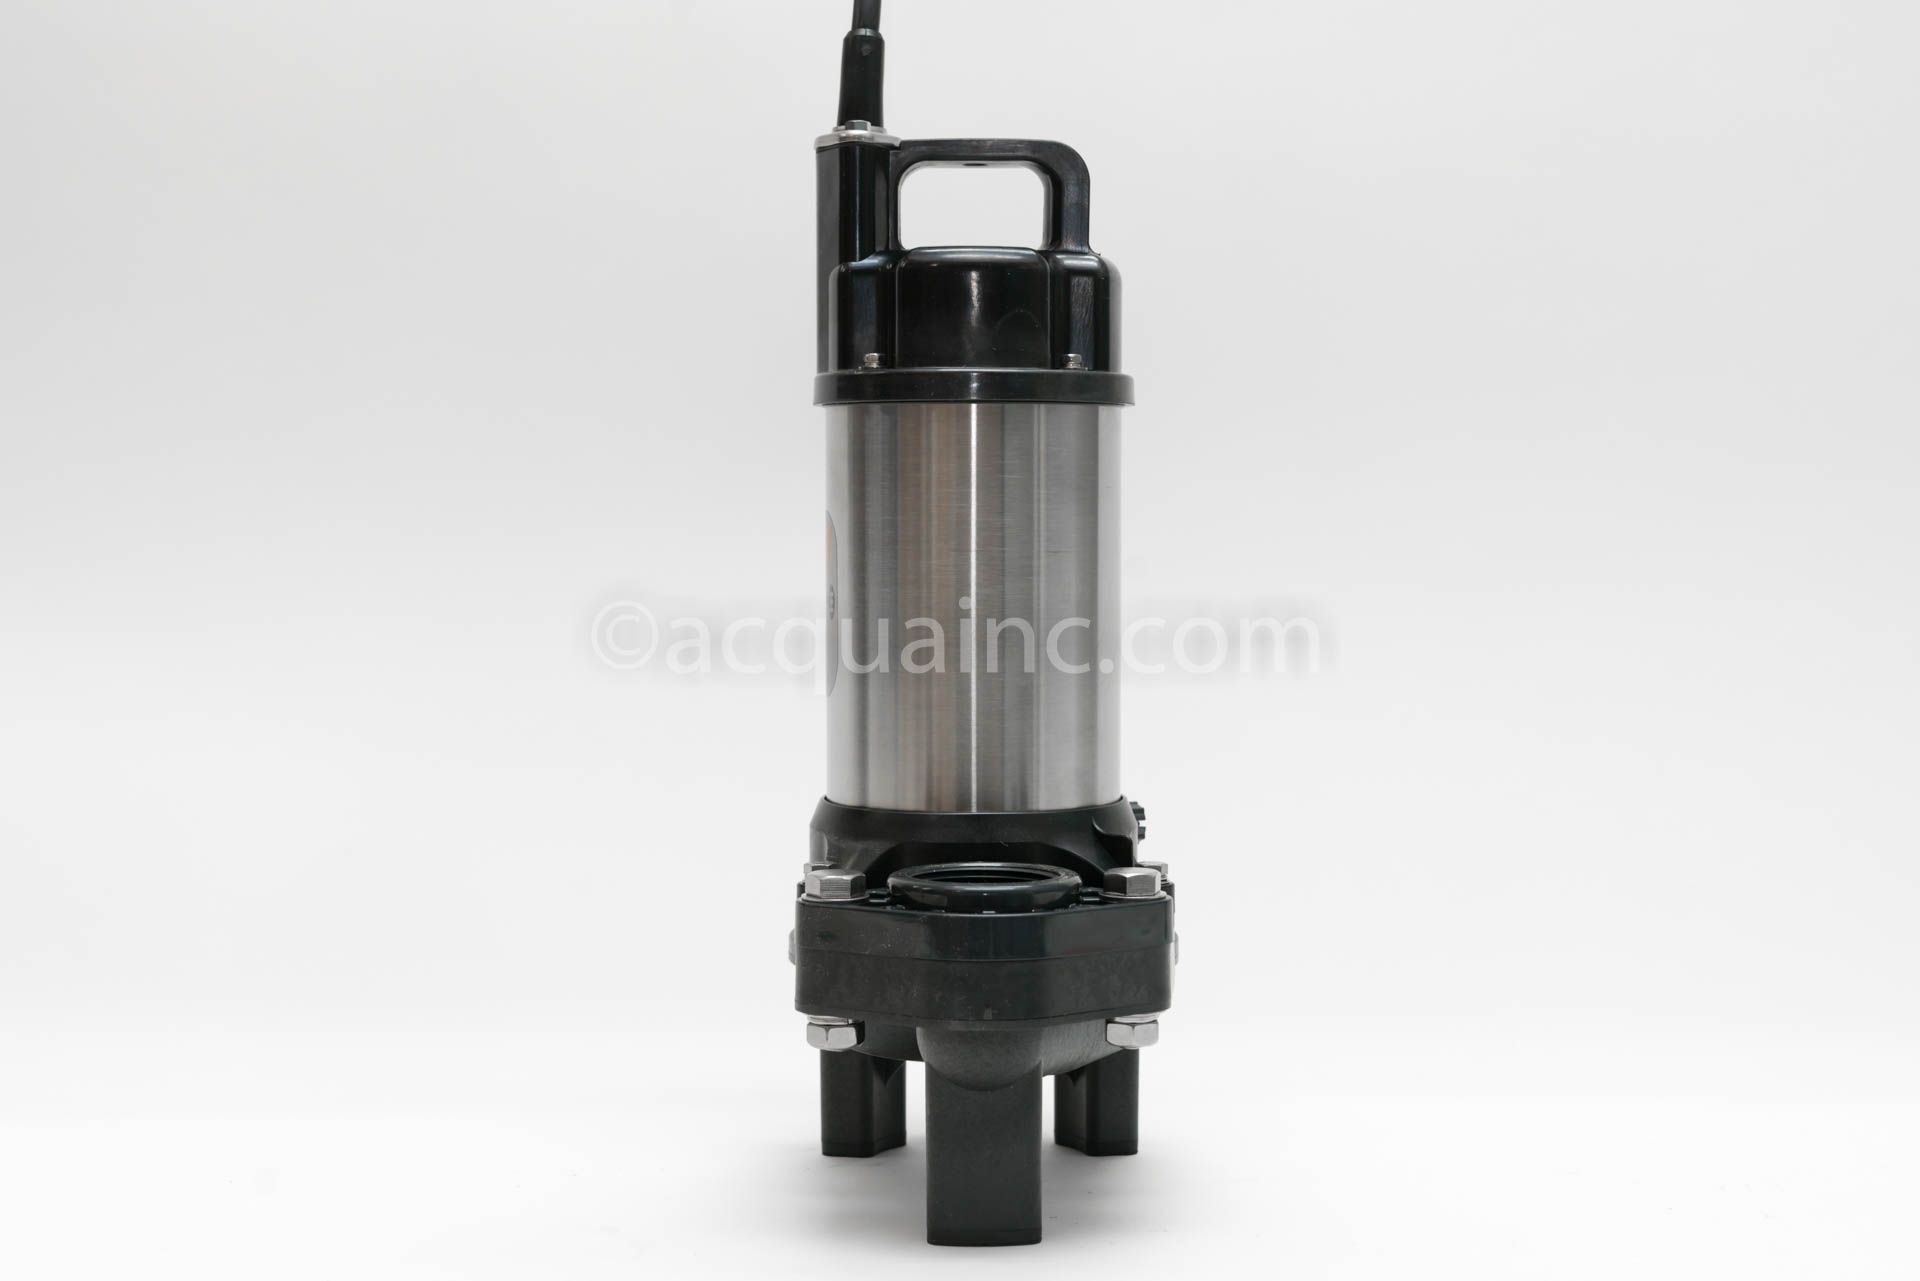 安い 激安 プチプラ 高品質 水処理用品ドットコム川本ポンプ Ｐラインポンプ 2極 PE 形 50Hz PE2-405-0.4S 